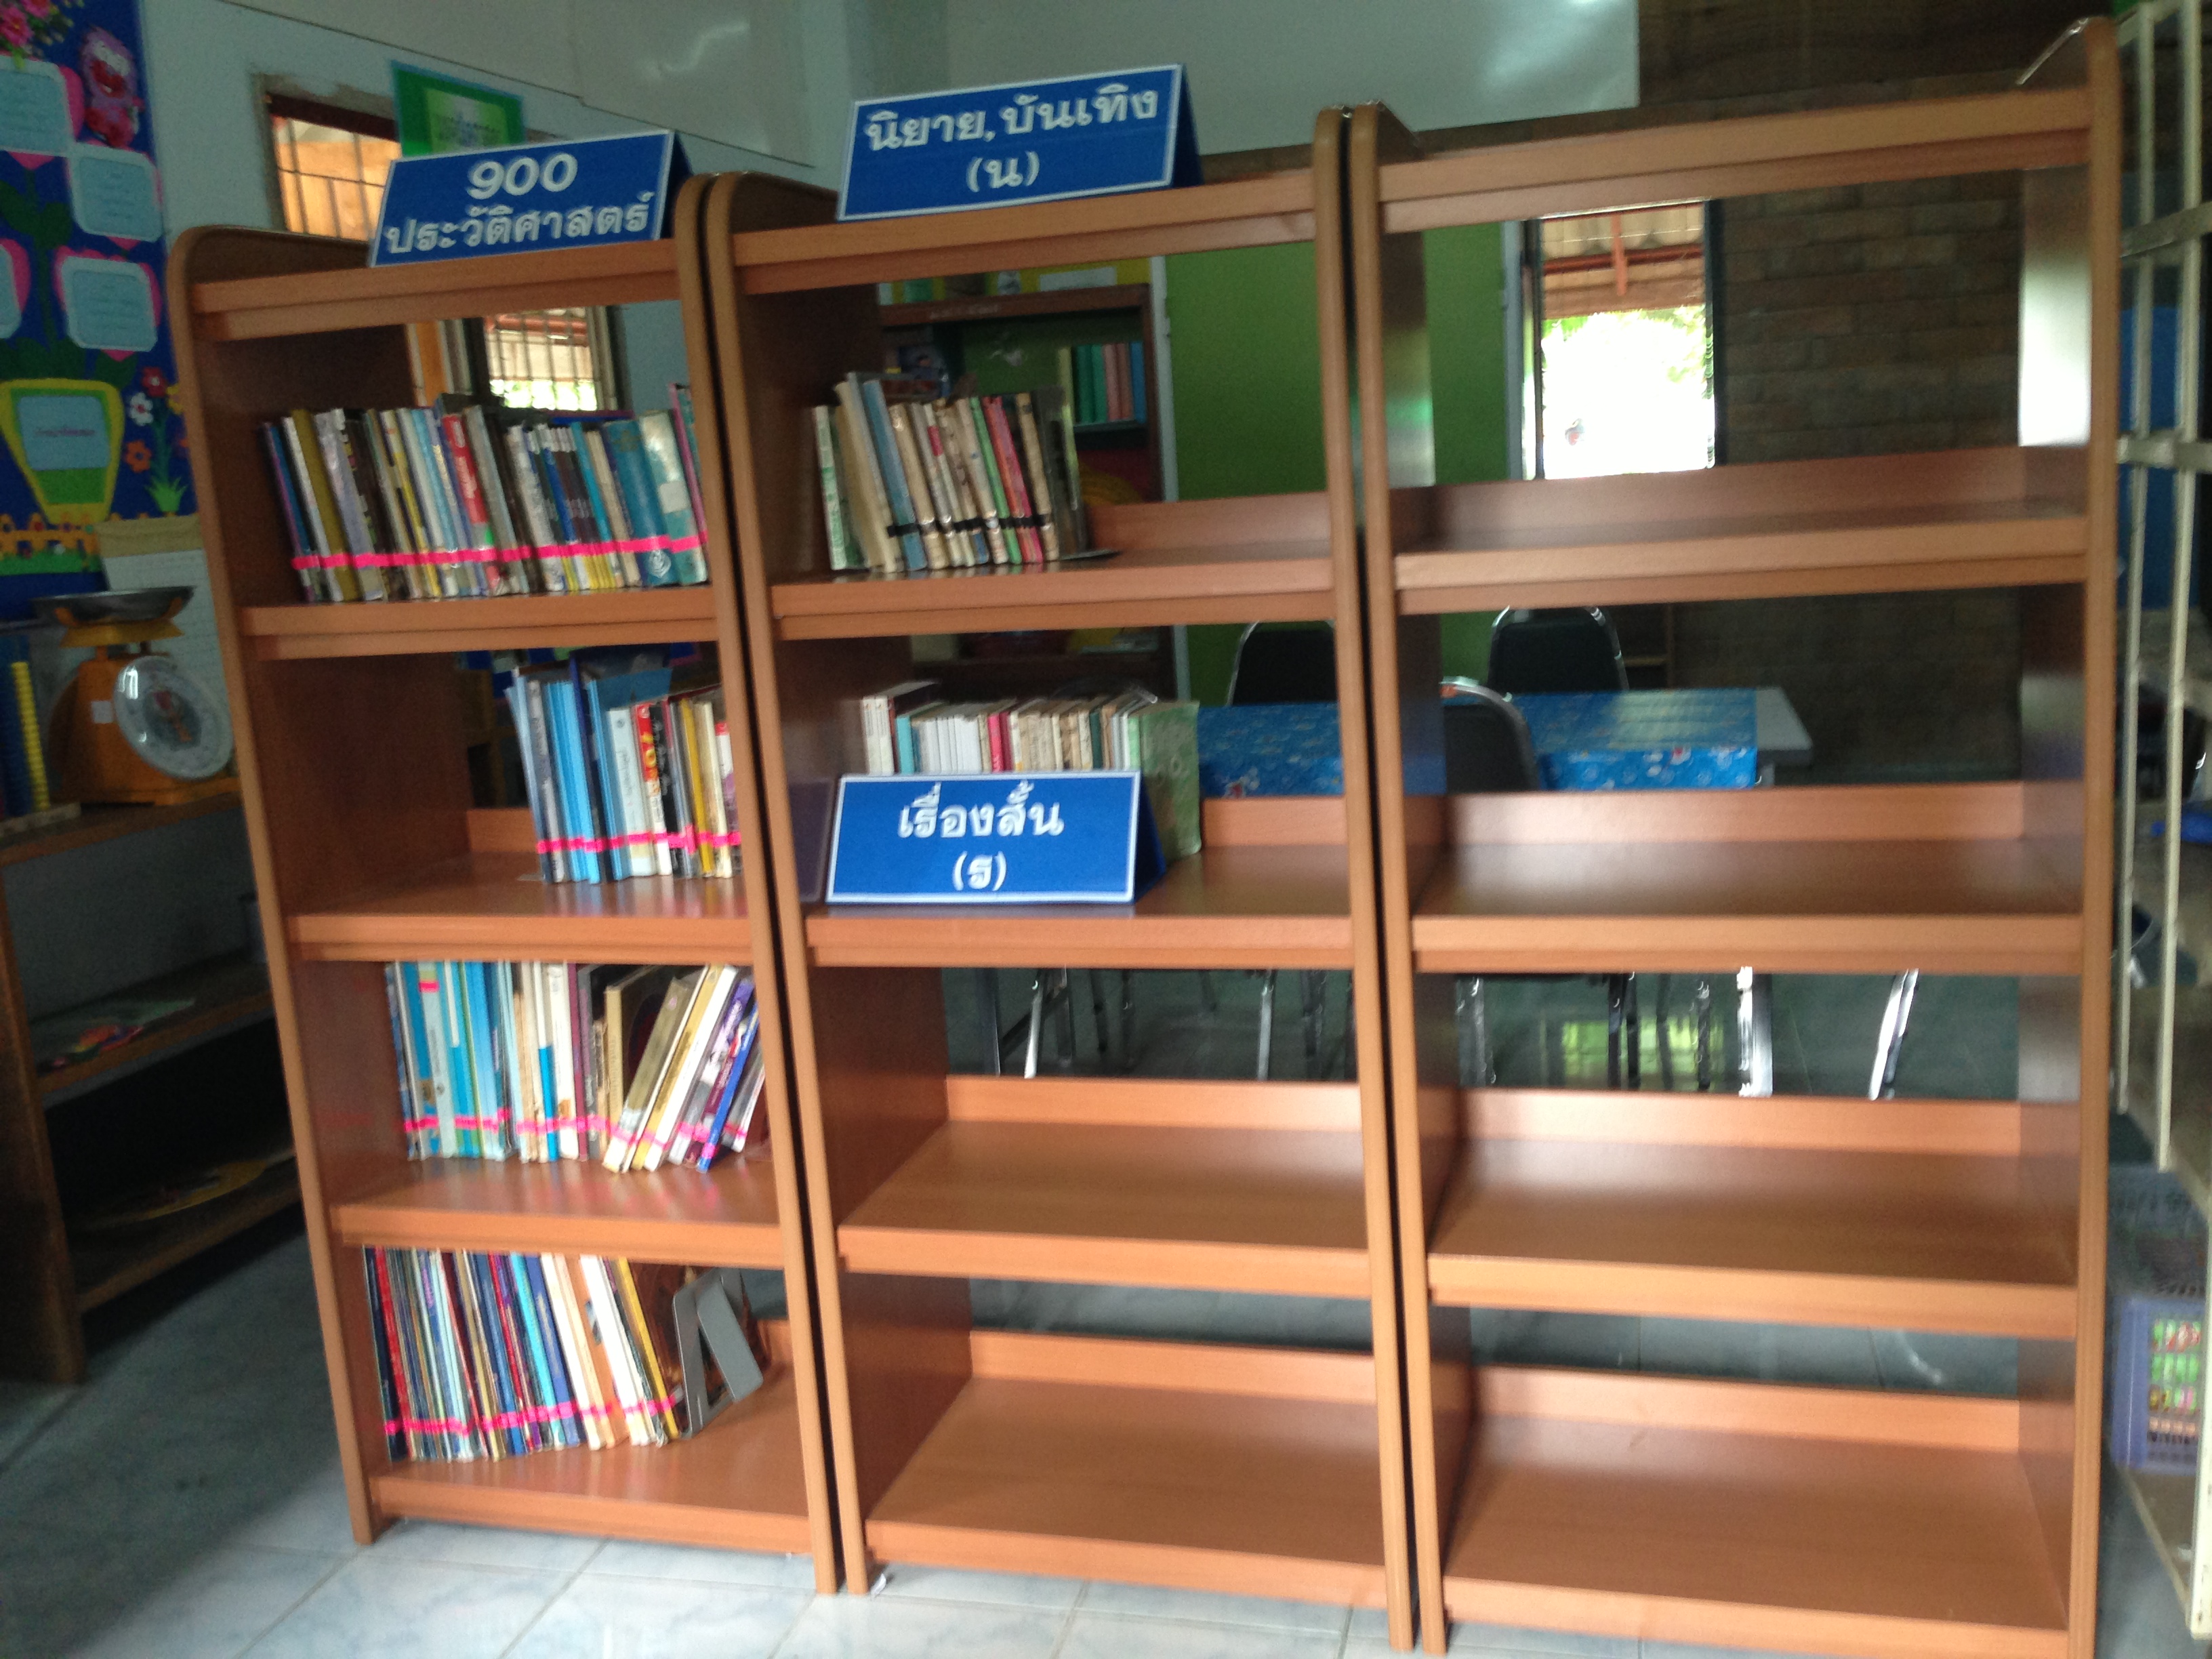 มอบห้องสมุดกรีนวิงให้โรงเรียนบ้านแม่ใจ อ.แม่ใจ จ.พะเยา วันที่ 9 ก.ค. 2556